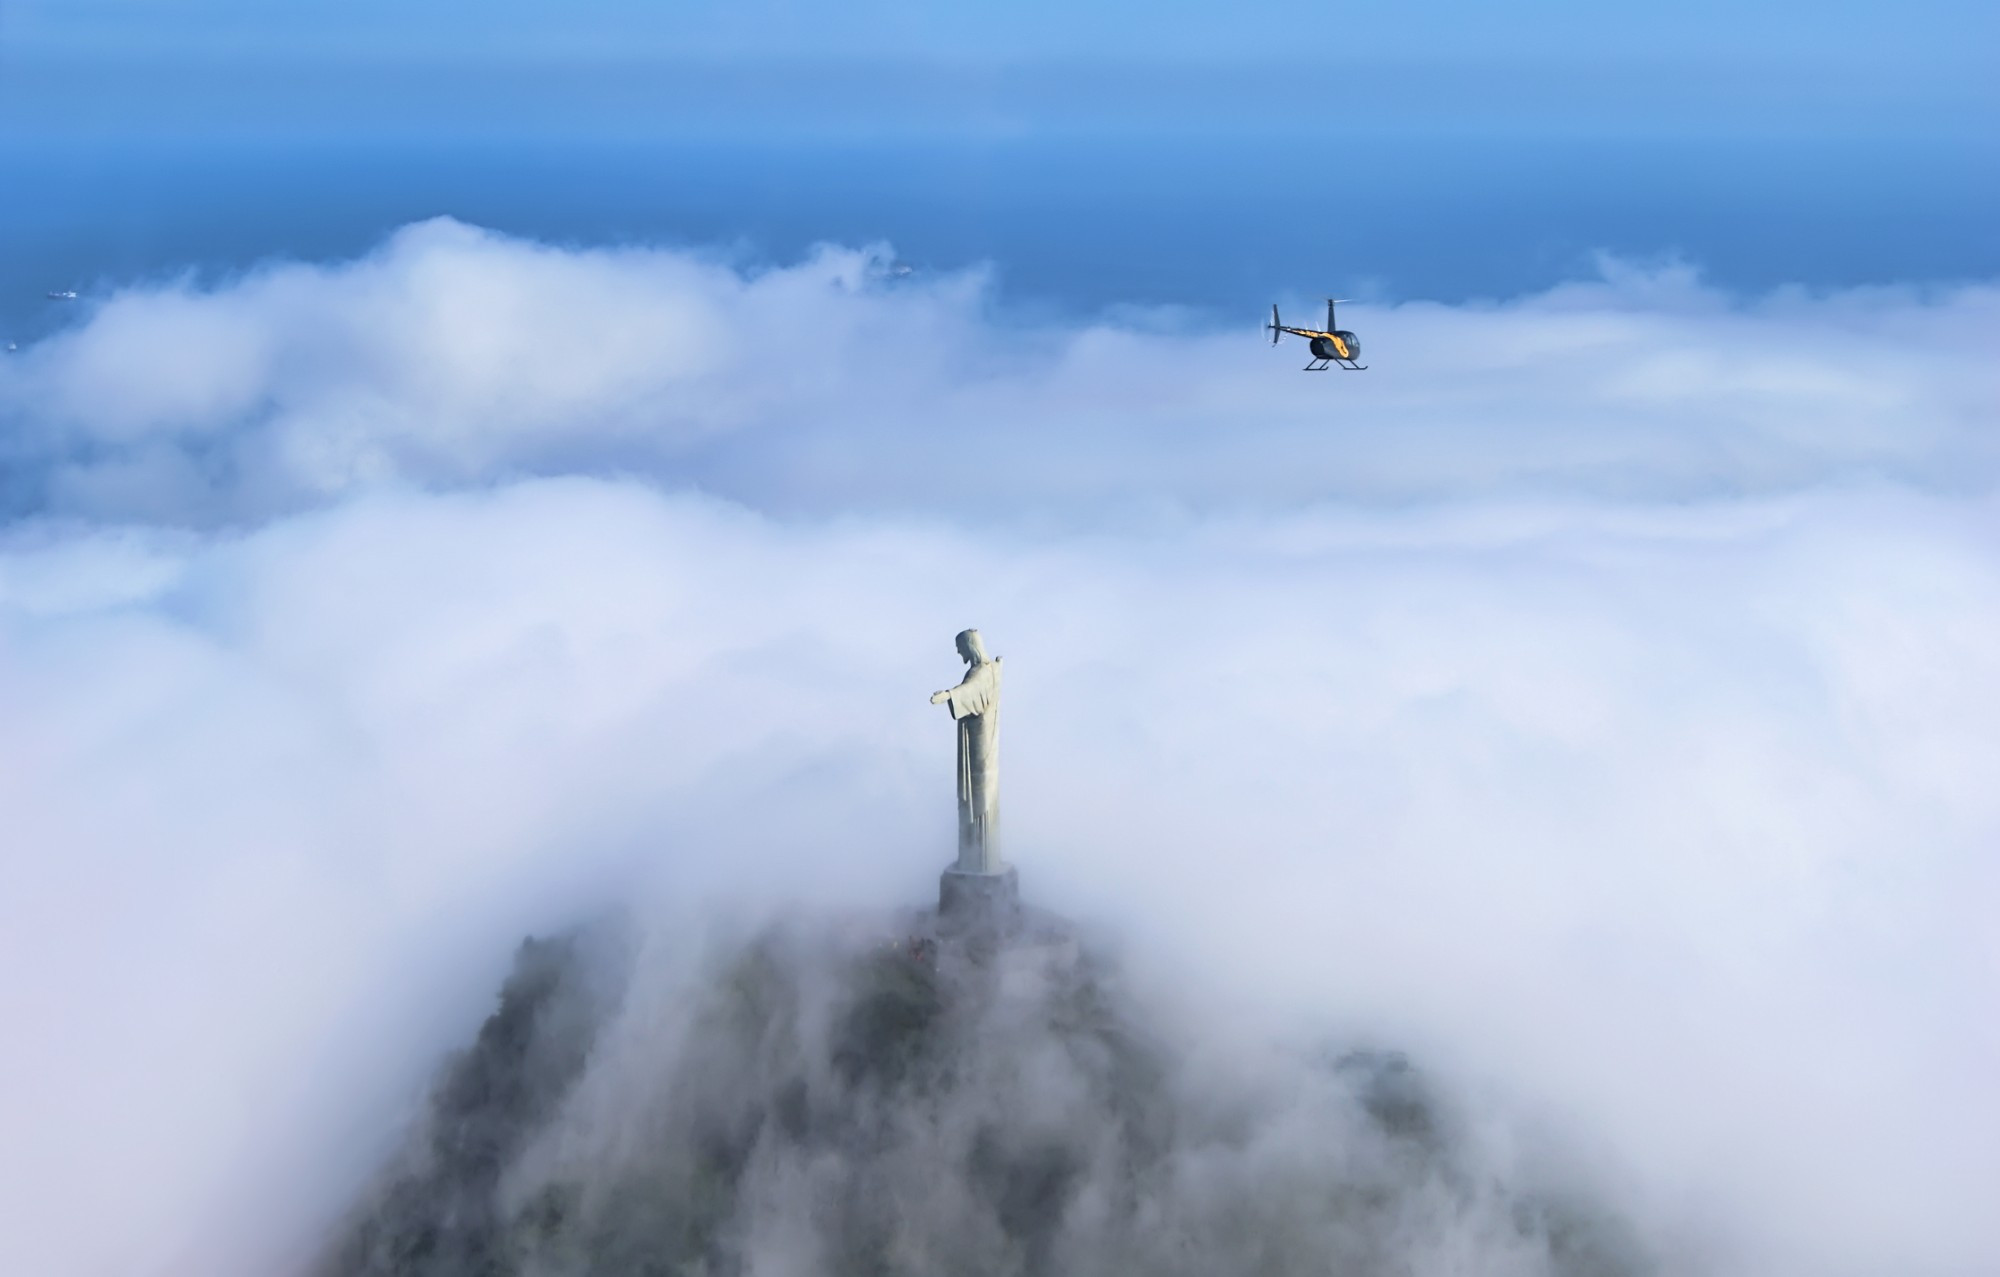 Одна из самых знаменитых статуй в мире и точно самая узнаваемая в Бразилии — статуя Христа-Искупителя. Установленная на горе Корковадо на высоте более 700 метров, она с распростертыми руками в благословляющем жесте смотрит на огромный город, находящийся под ней. Статуя Христа в Рио-де-Жанейро в силу своей известности привлекает миллионы туристов на гору Корковадо. С её высоты открывается прекрасный вид на десятимиллионный город с его бухтами, пляжами, стадионом «Маракана». Поводом для возведения монумента Христа стало приближение годовщины столетия независимости Бразилии в 1922 году. На сооружение монумента ушло около девяти лет. Открытие и освящение статуи состоялось 12 октября 1931 года. Статуя быстро взяла на себя роль символа Рио-де-Жанейро и всей Бразилии. А в 2007 году её избрали одним из новых семи чудес света.